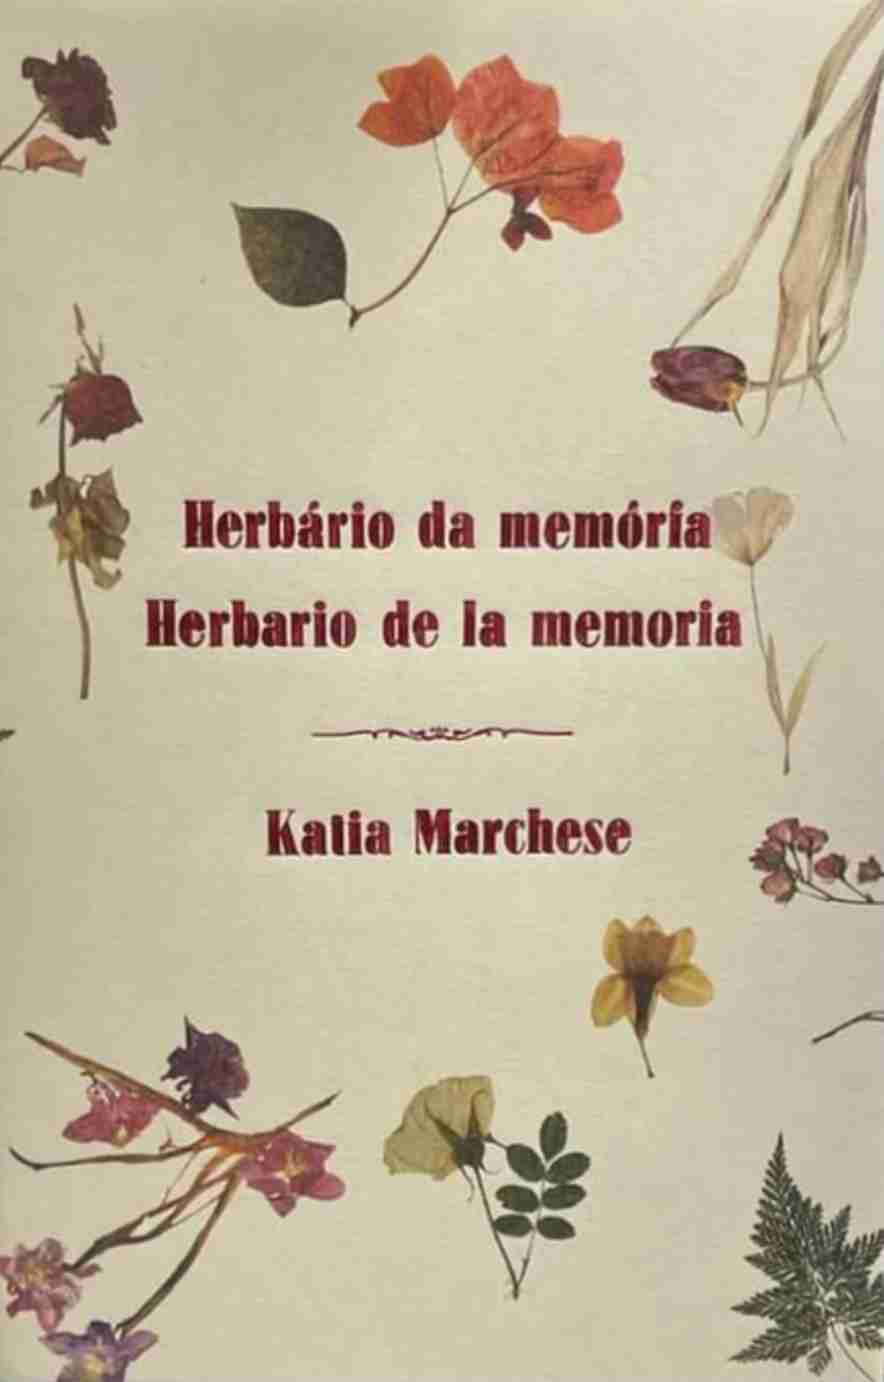 Katia Marchese lança livro bilíngue em Campinas